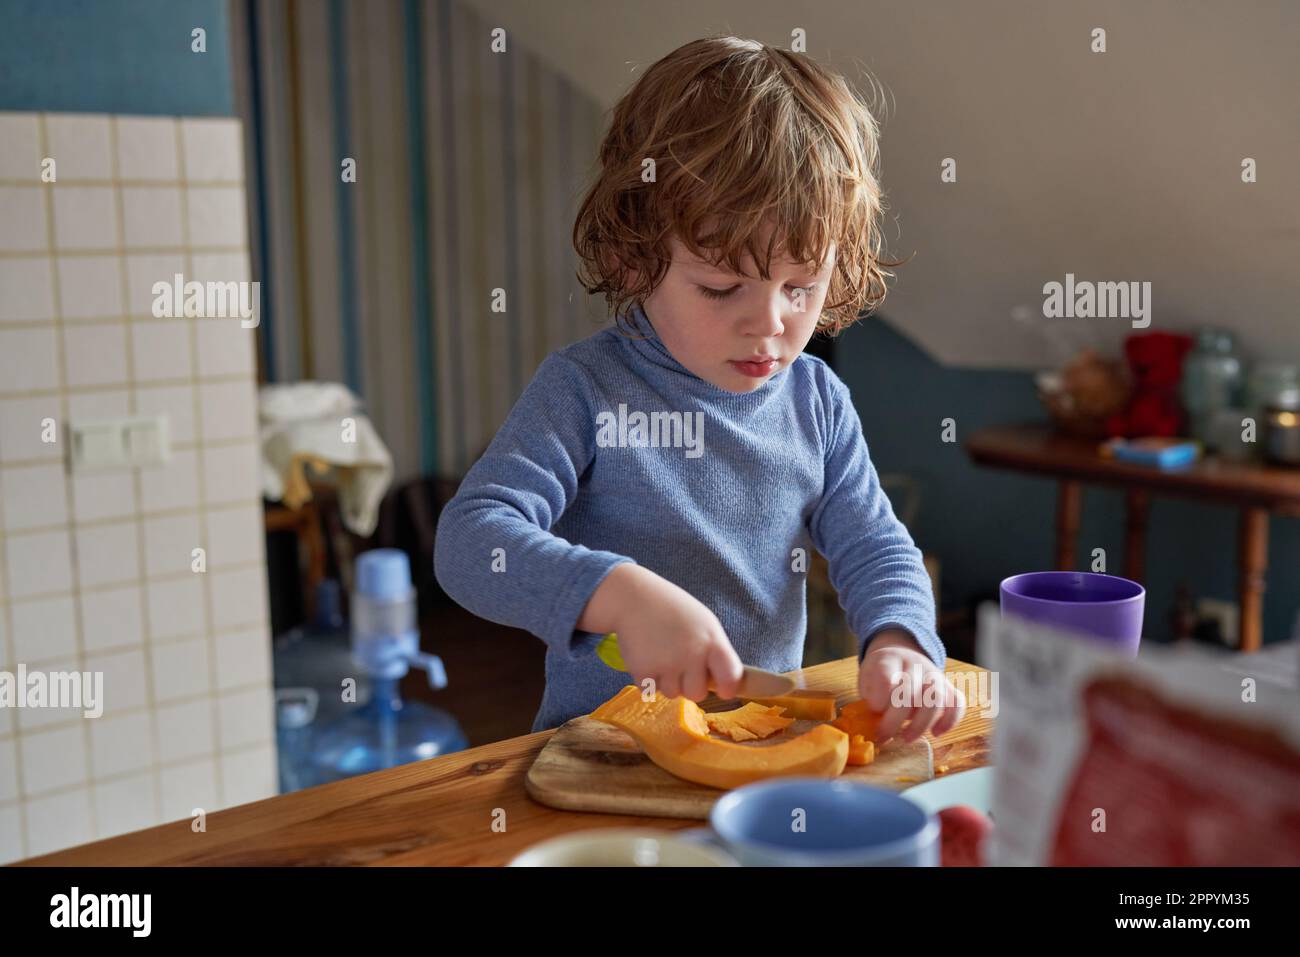 Un ragazzino lavora in cucina, taglia una zucca Foto Stock